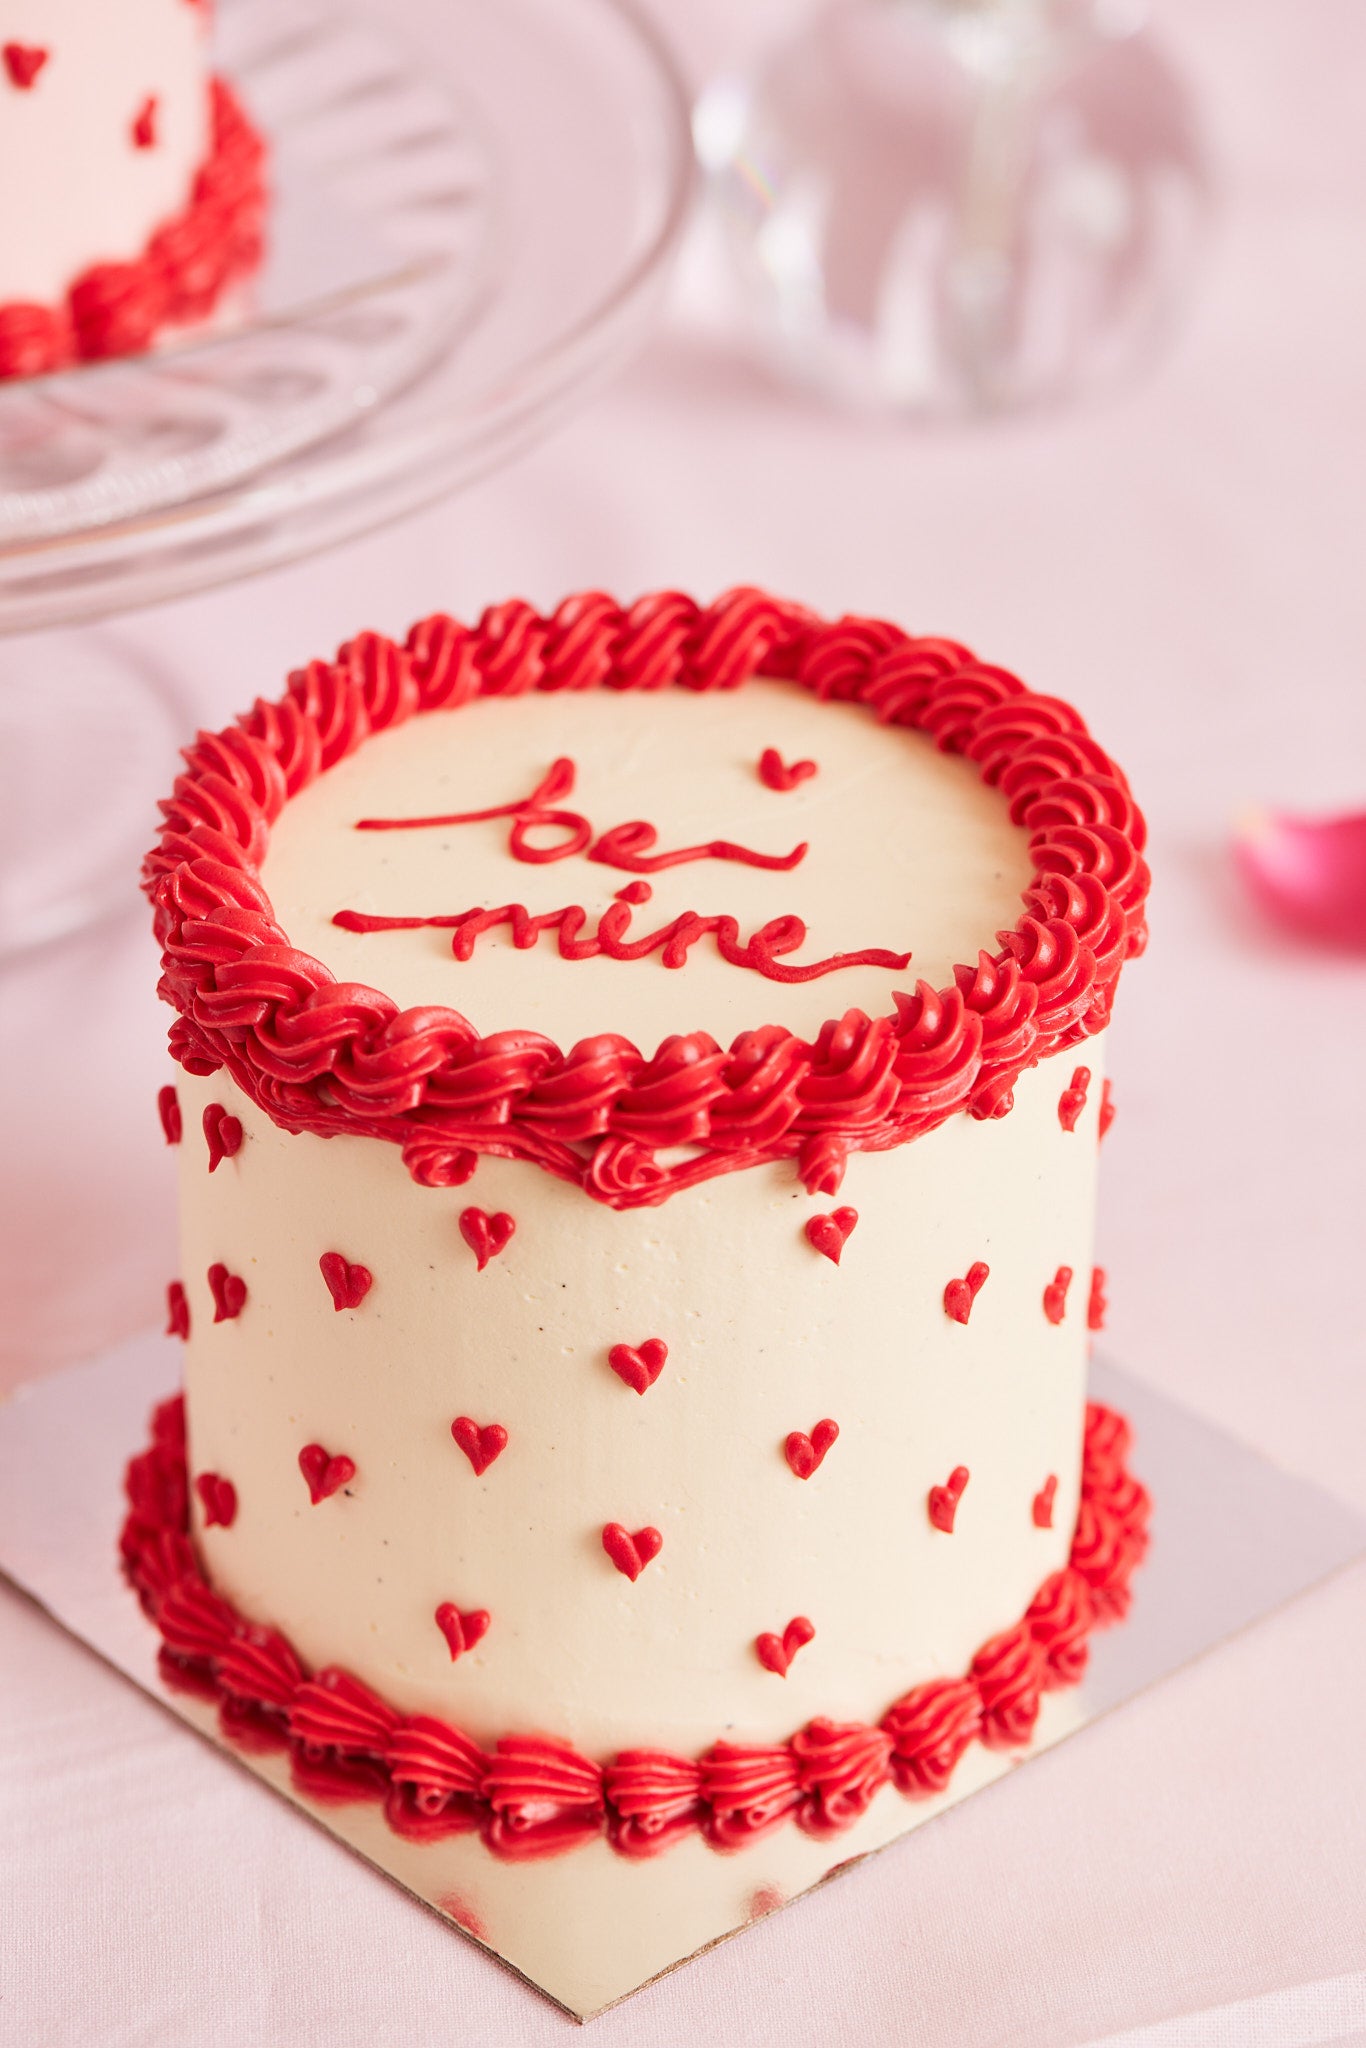 Mini white sweetheart cake - Red velvet